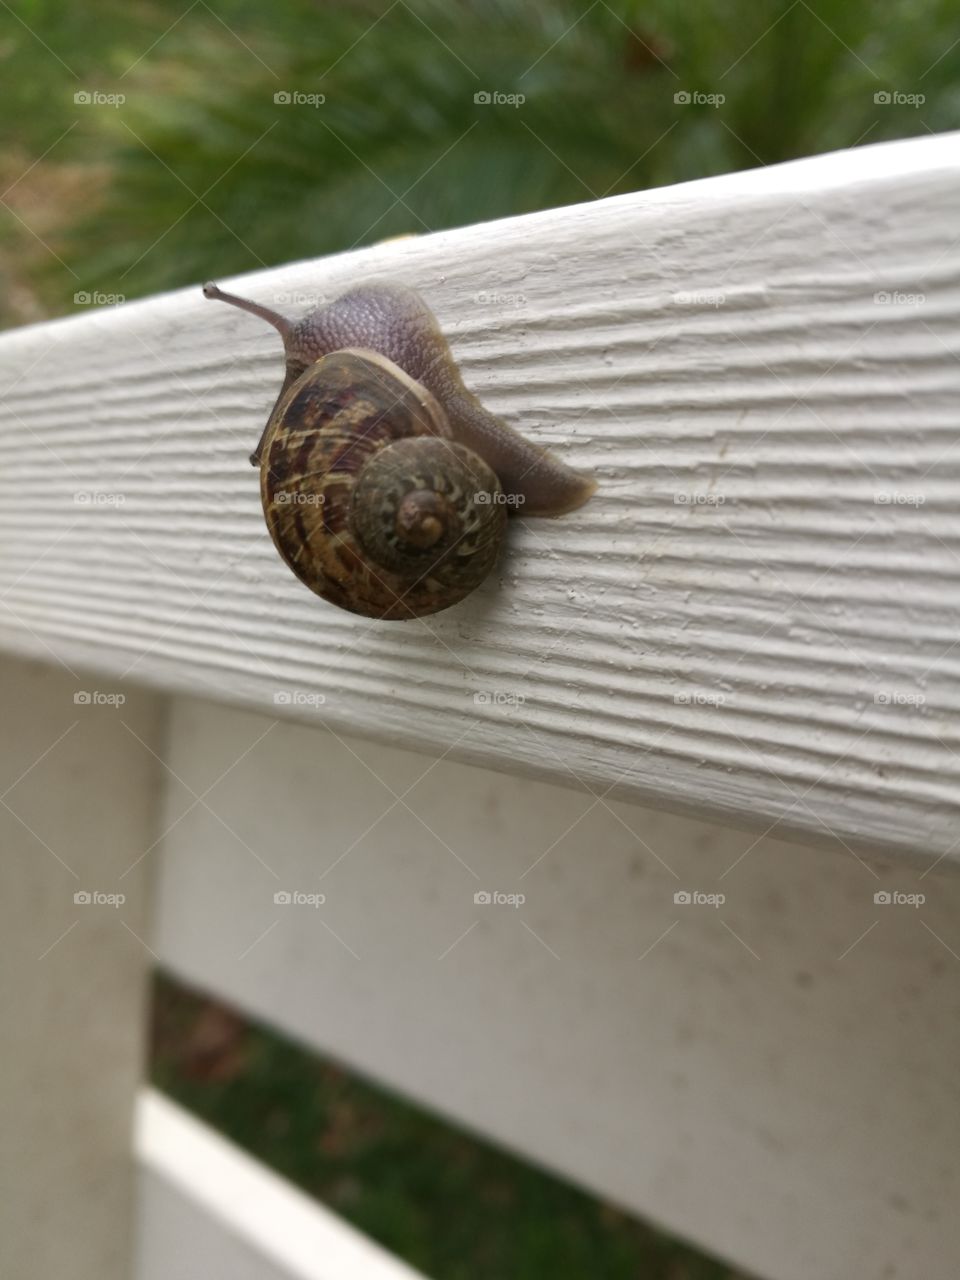 Snail on a rail